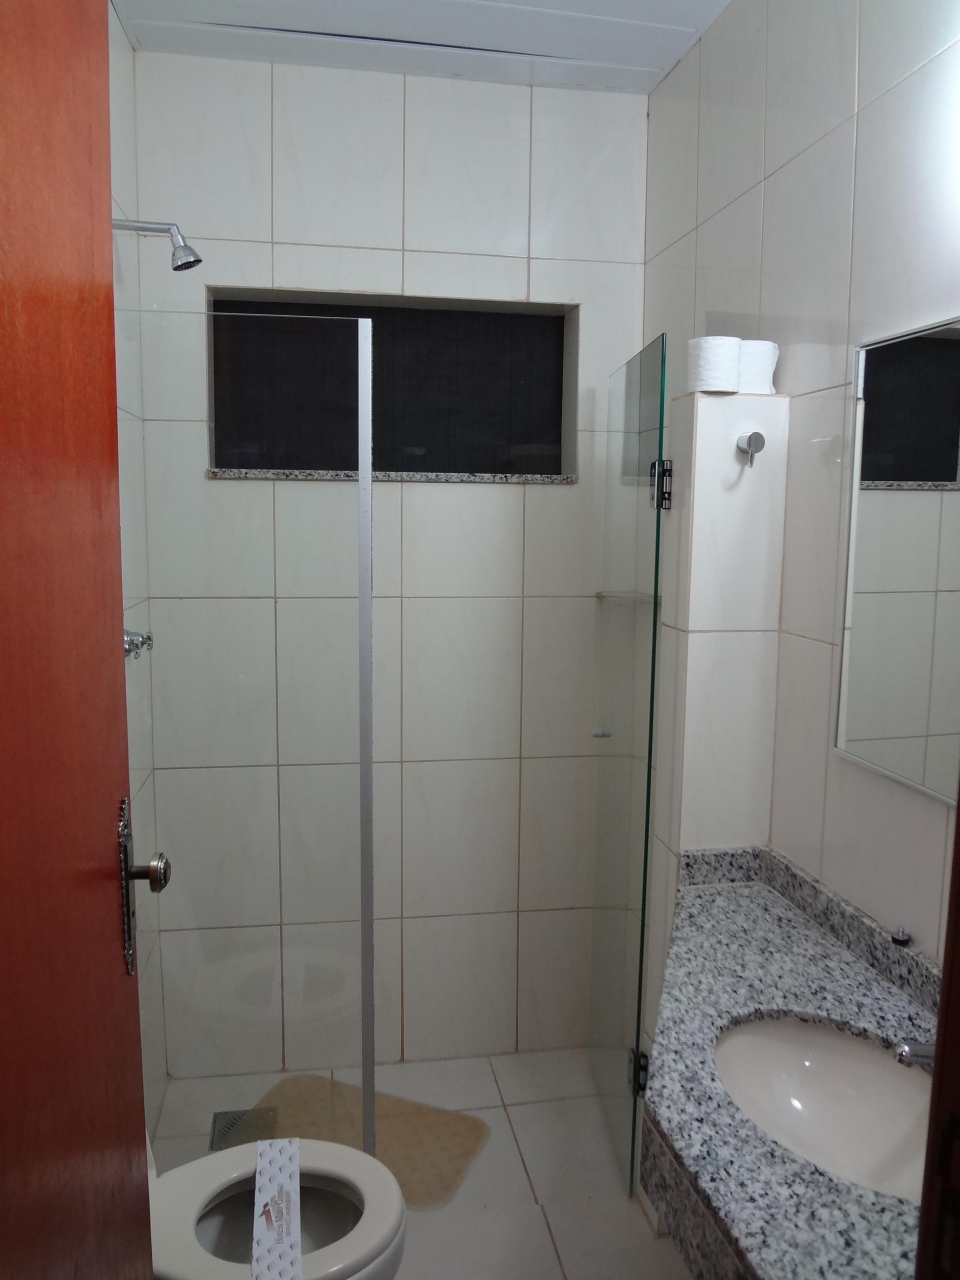 ブラジル トイレ 旅行のクチコミサイト フォートラベル